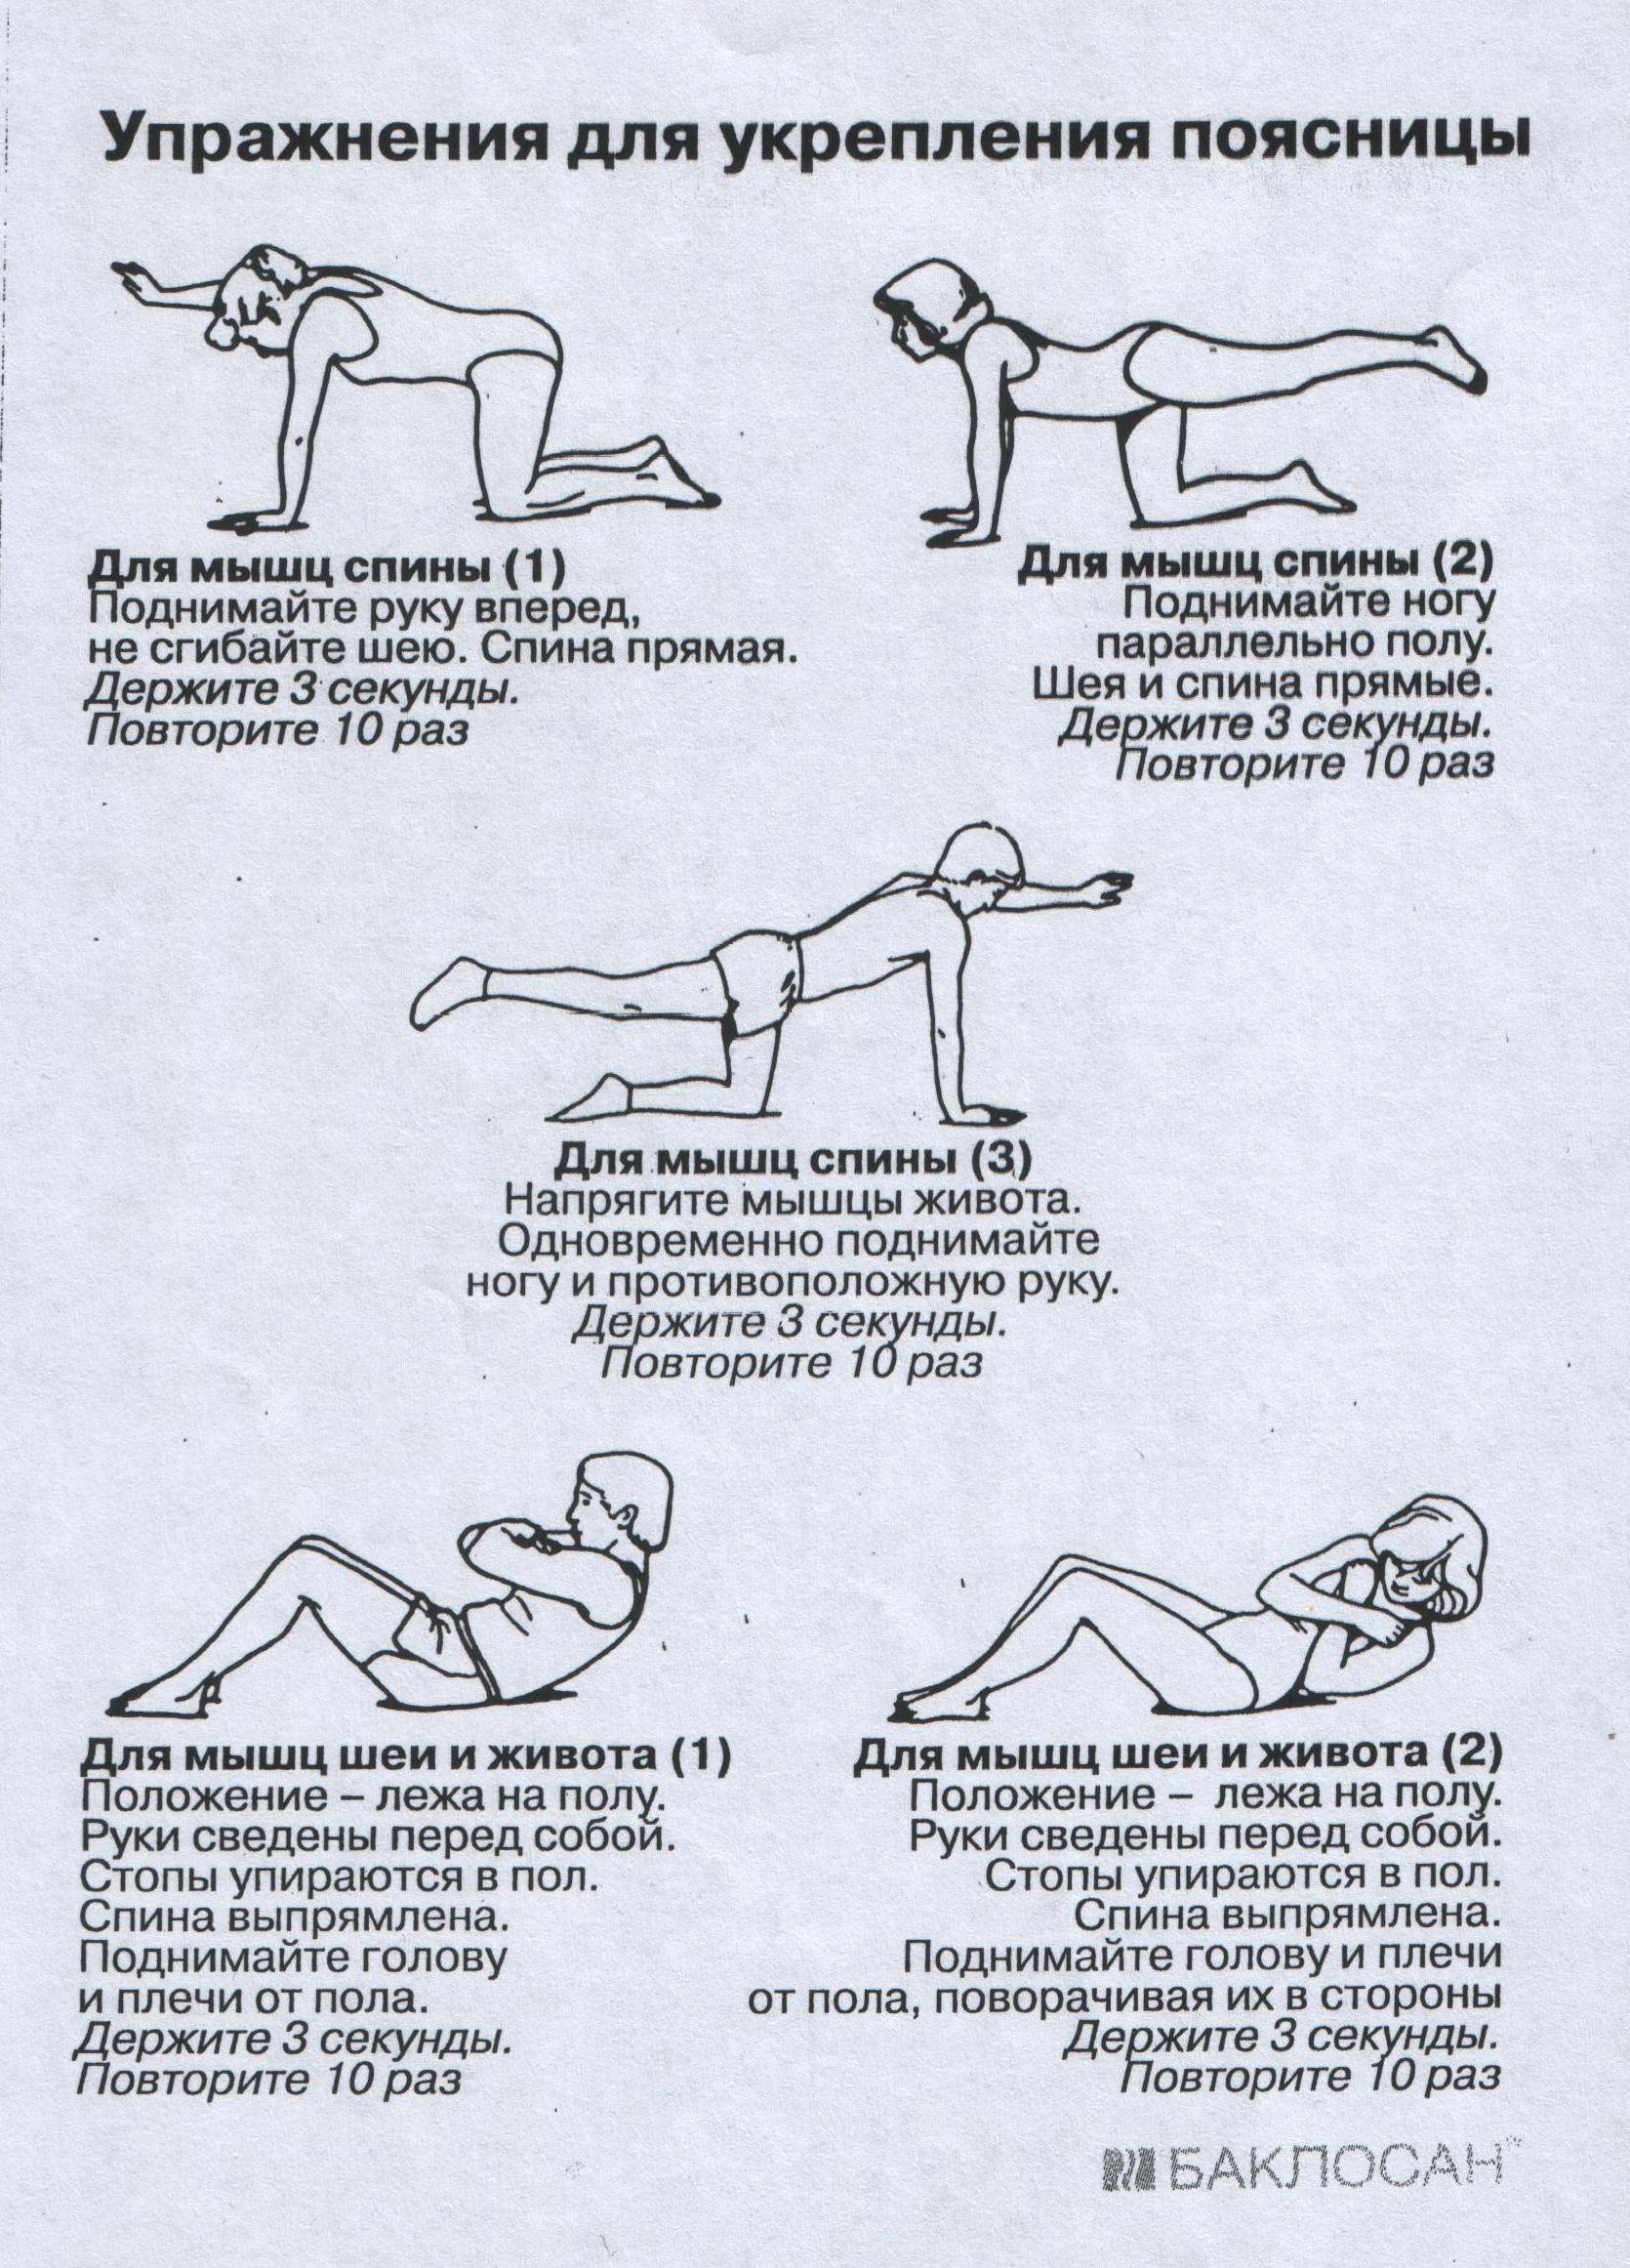 Упражнения для укрепления спины